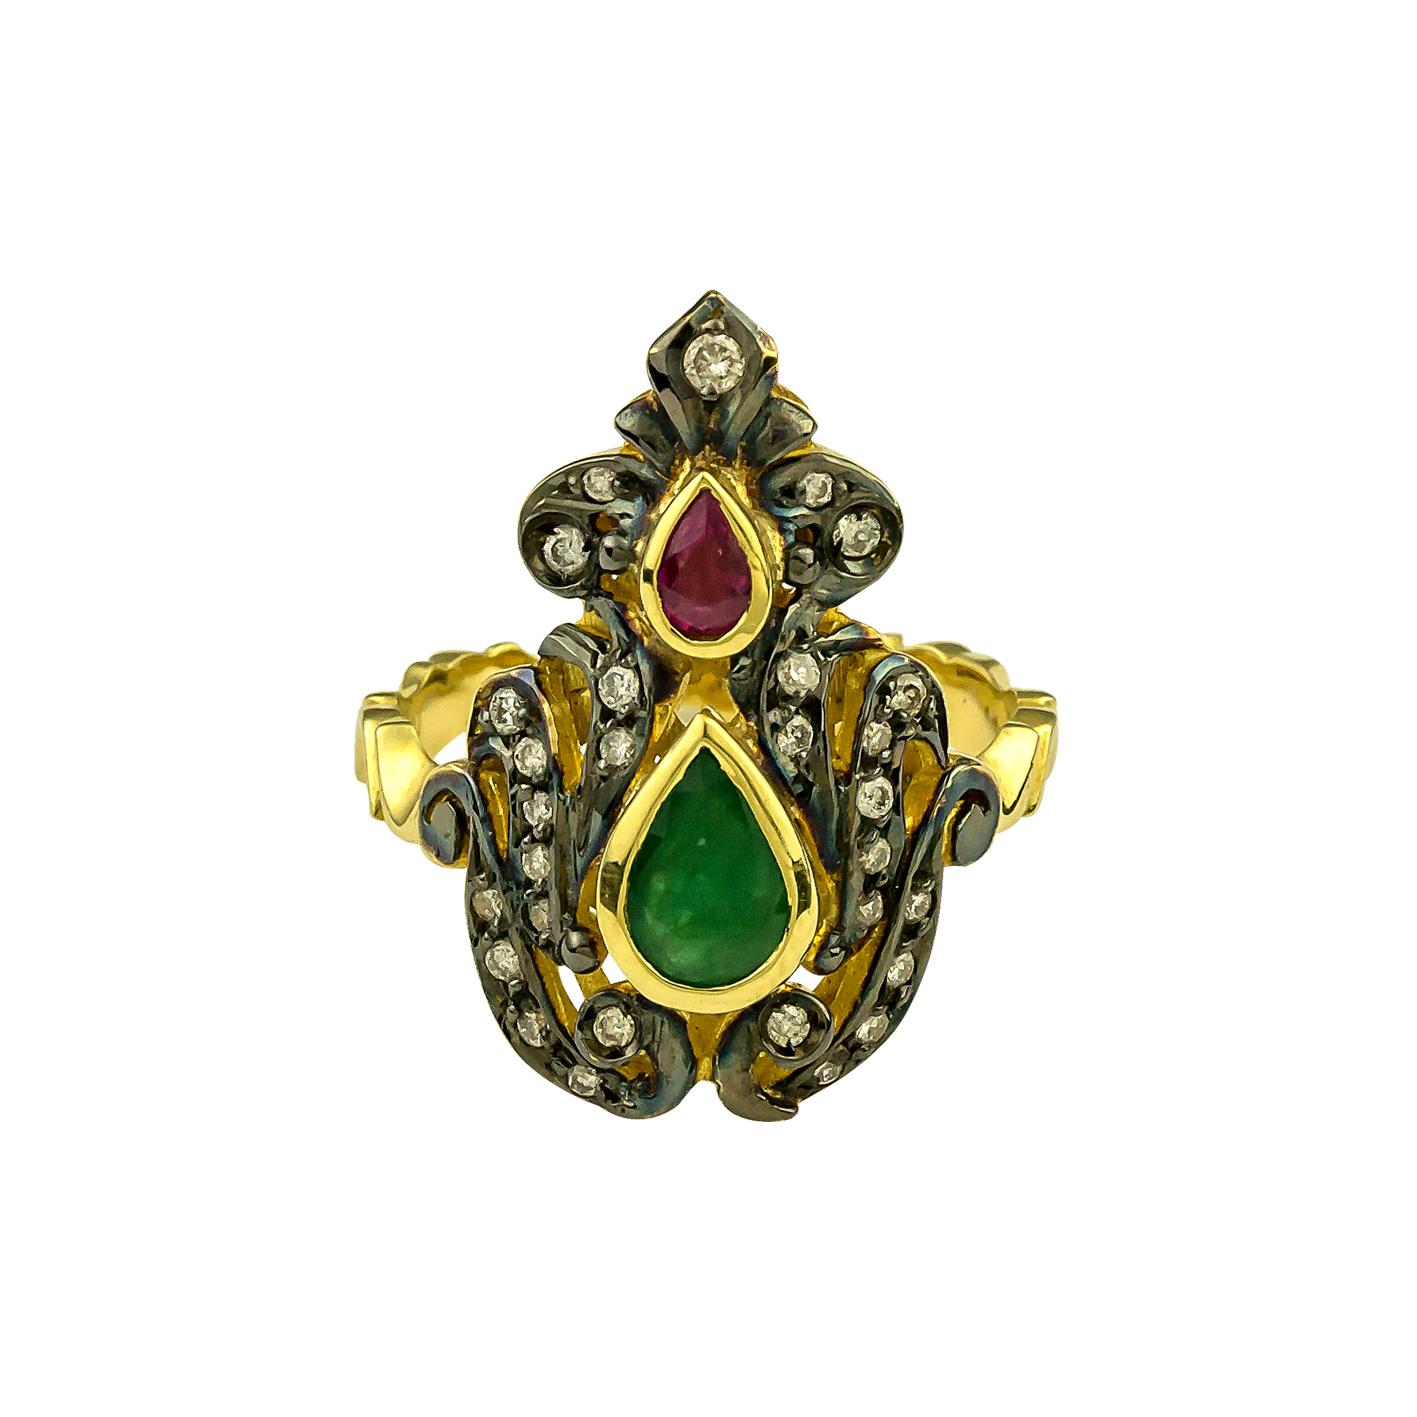 S.Georgios Handgefertigter Ring aus 18 Karat Gelbgold mit byzantinischer Granulierung und einer Kombination aus Diamanten, einem Rubin und einem Smaragd.
Der atemberaubende Ring besteht aus Diamanten im Brillantschliff mit einem Gesamtgewicht von